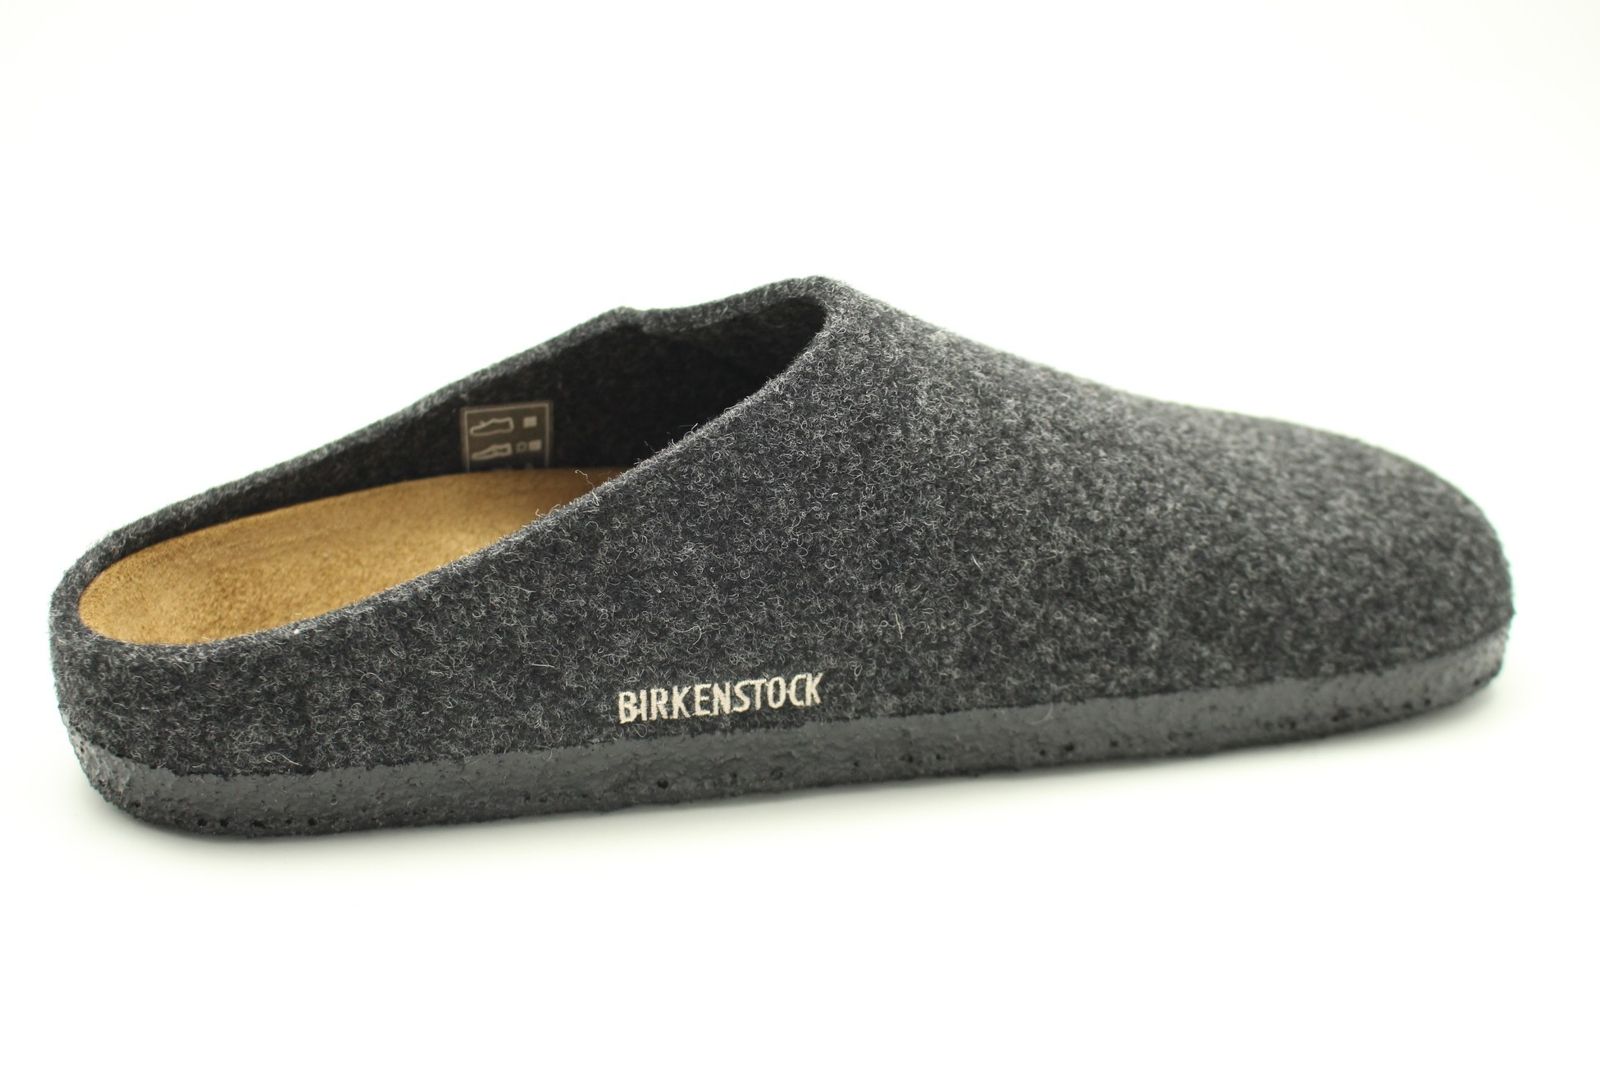 Schuh von Birkenstock, 41